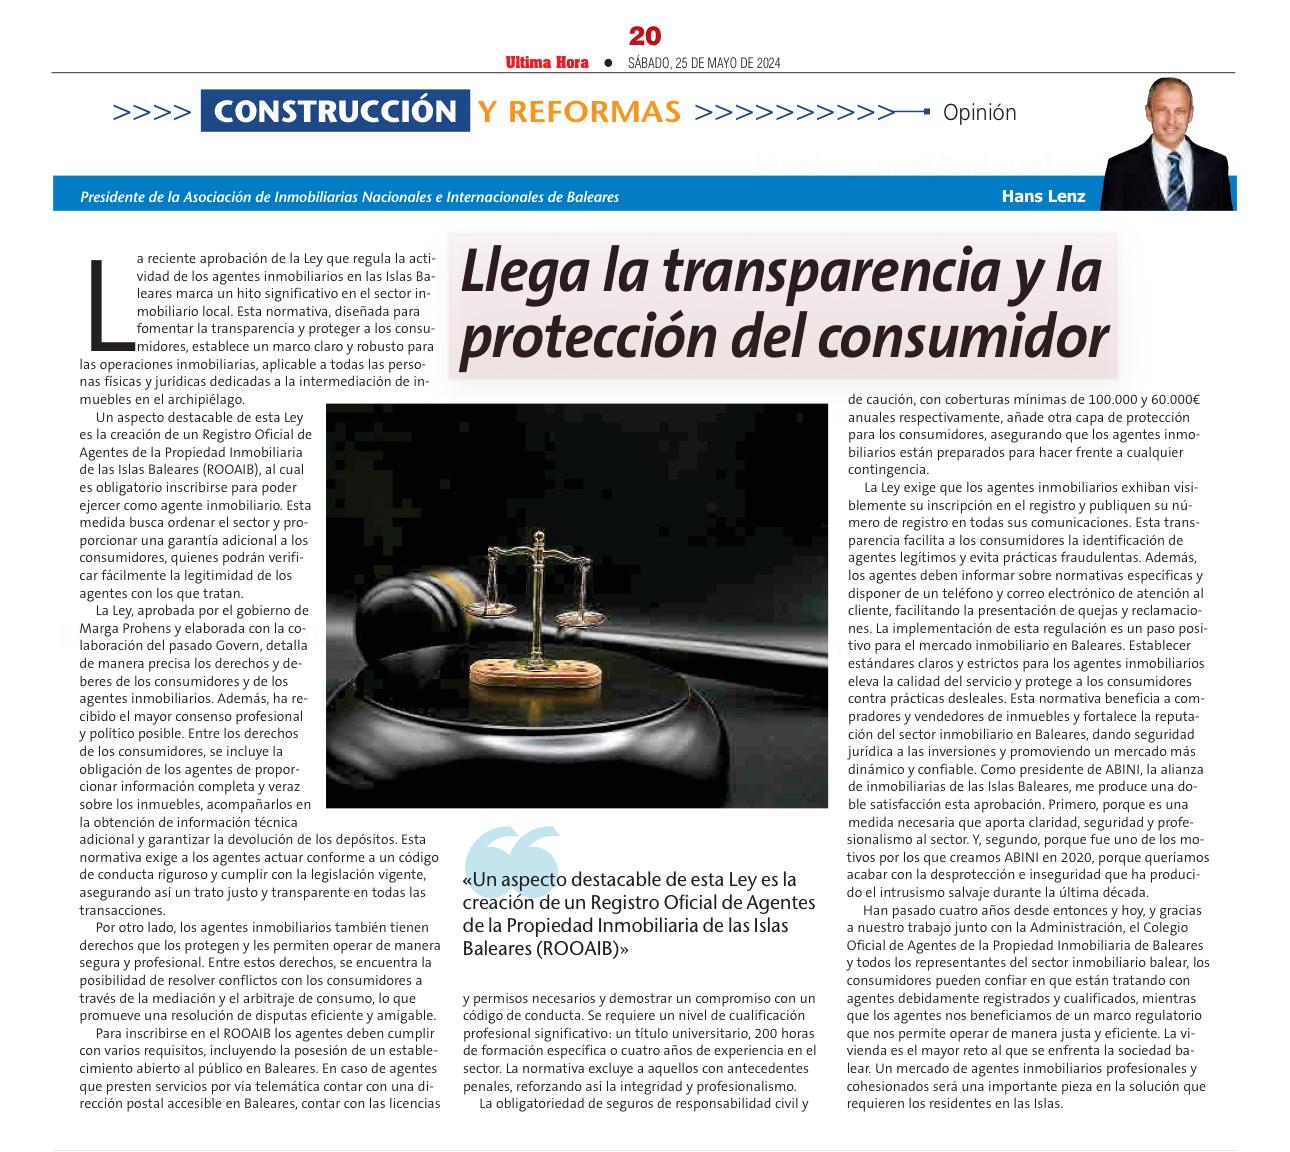 La Regulación de Agentes Inmobiliarios en Baleares: Llega la Transparencia y la Protección del Consumidor